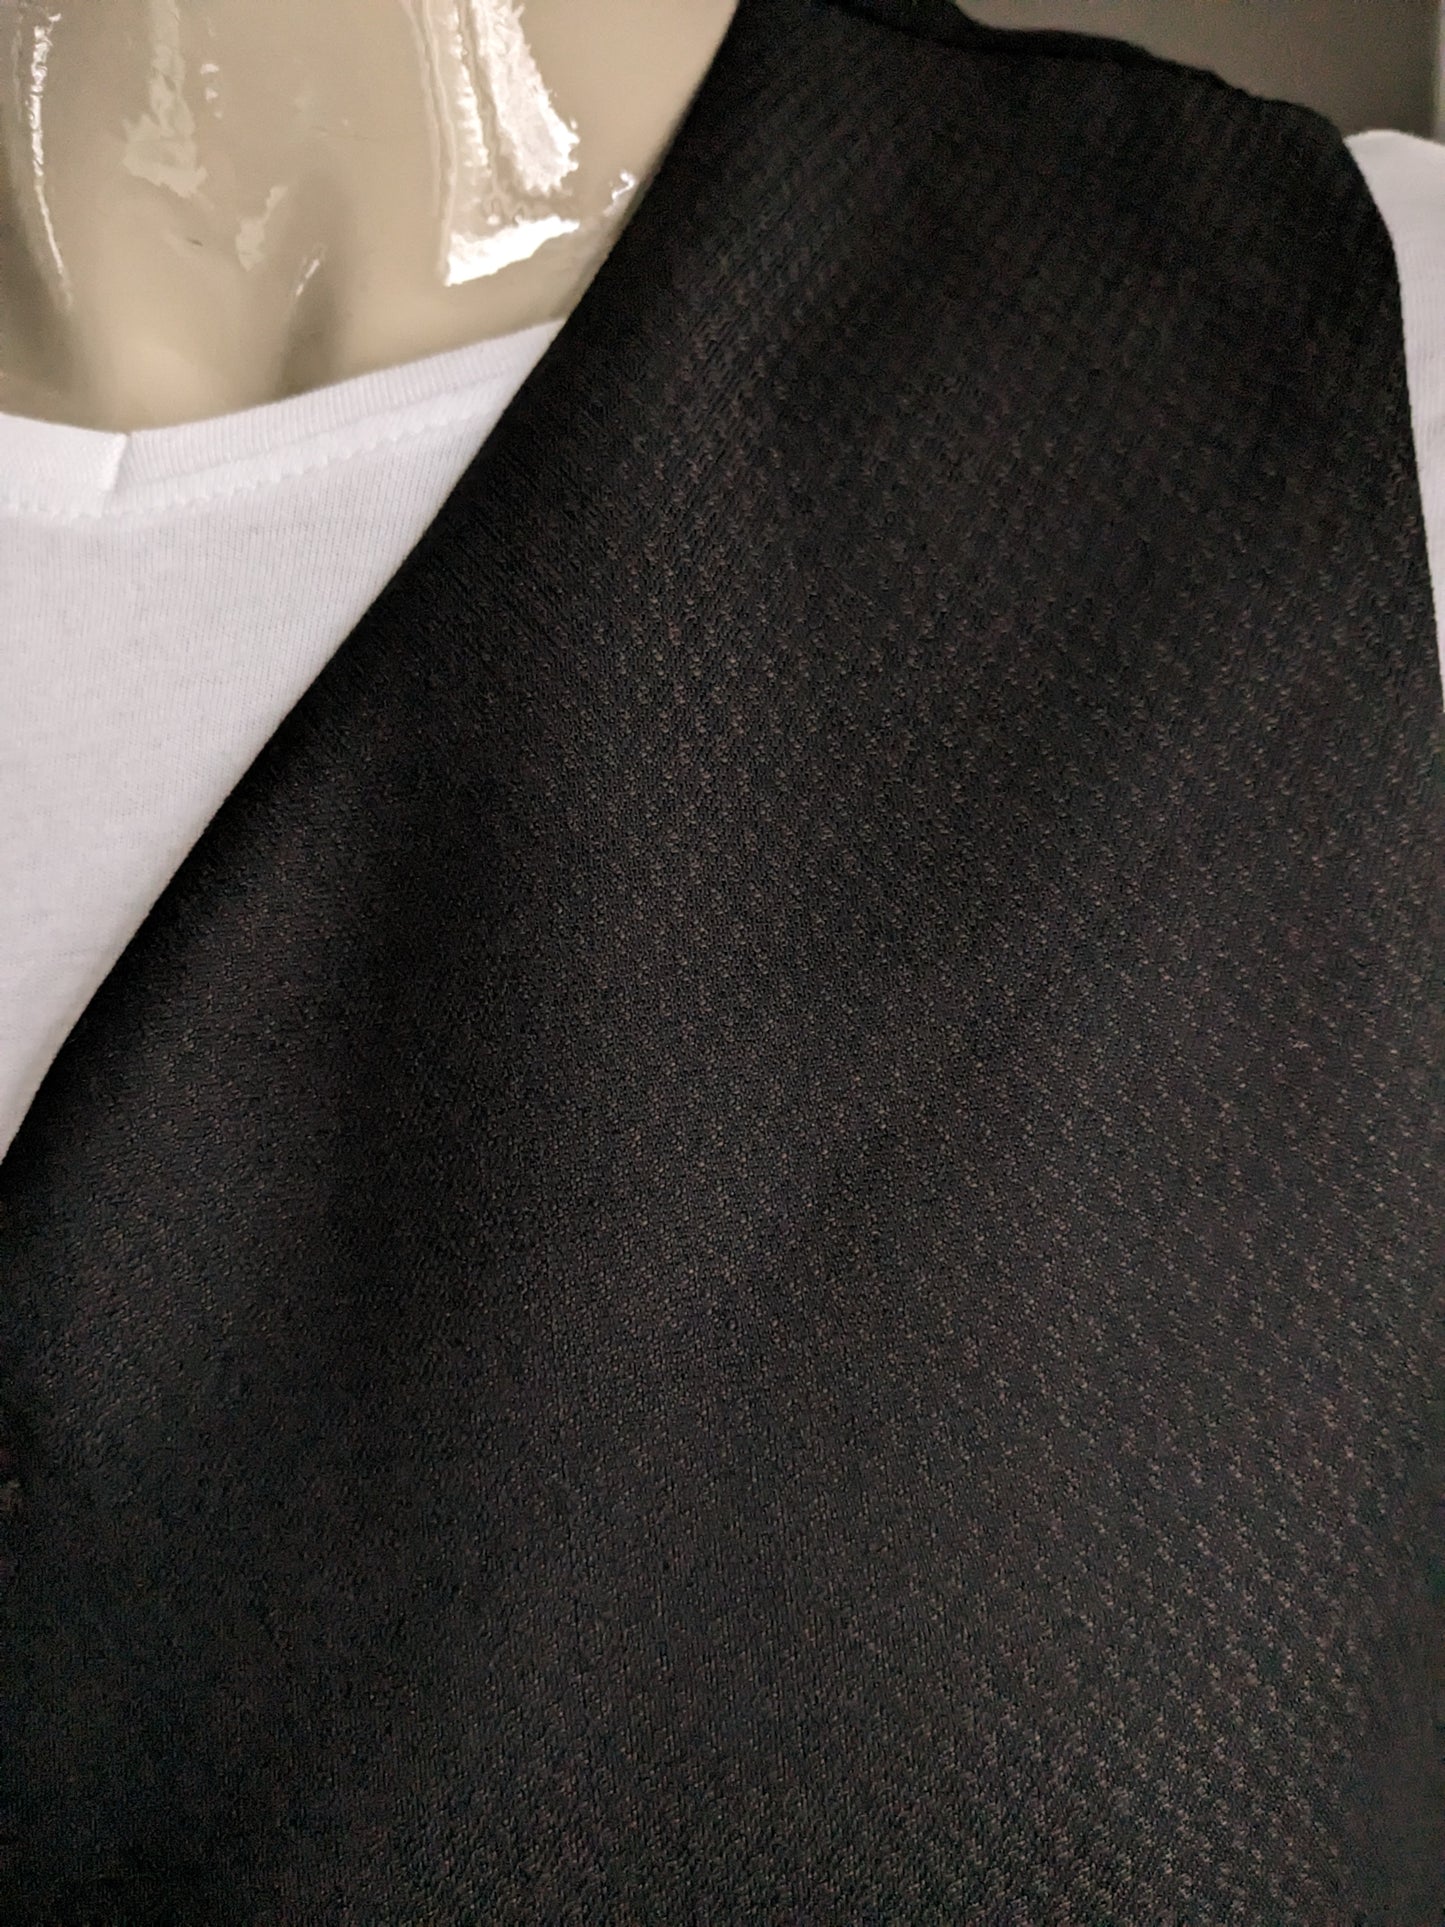 Gilet #340. Braunes schwarzes Motiv mit kleiner innerer Tasche. Größe xl.